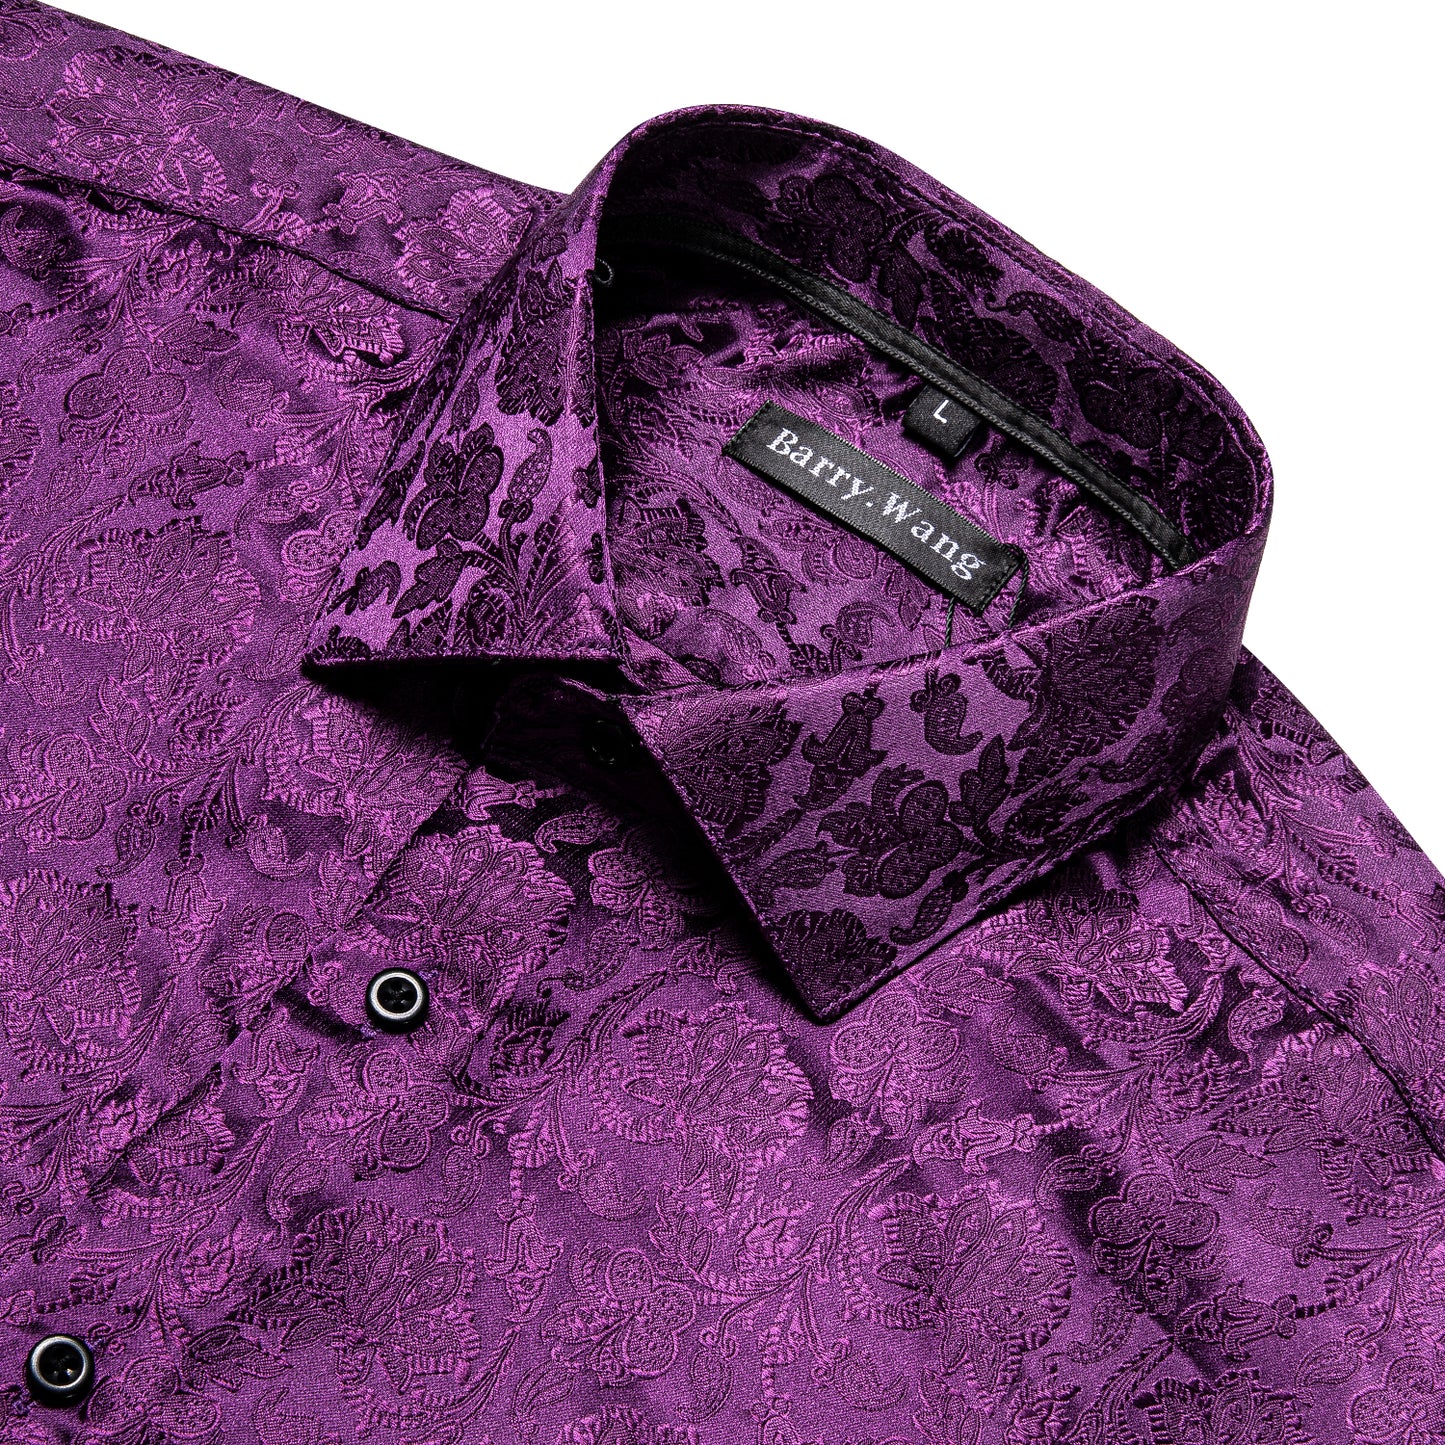 CY0093 Novelty Silky Shirt - Purple Garden